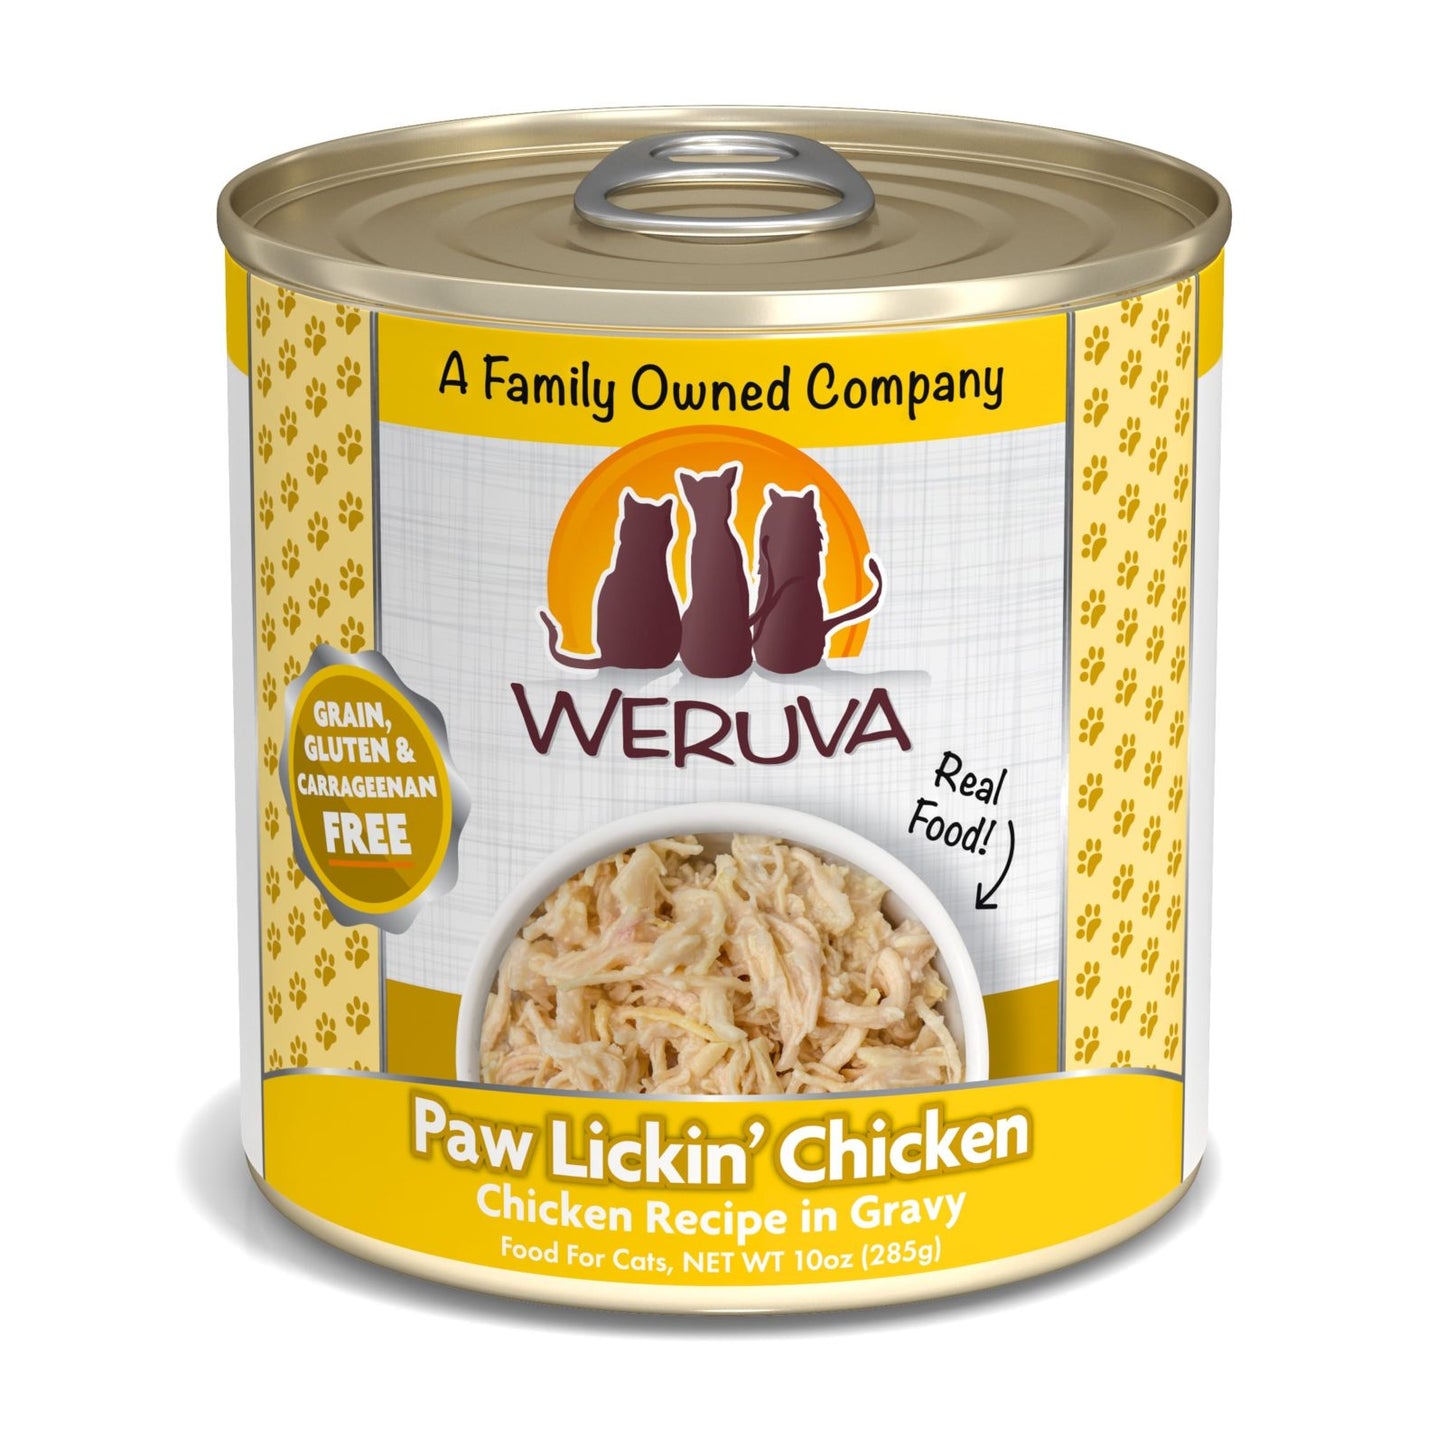 Weruva Paw Lickin' Chicken, Chicken Recipe in Gravy, Wet Cat Food